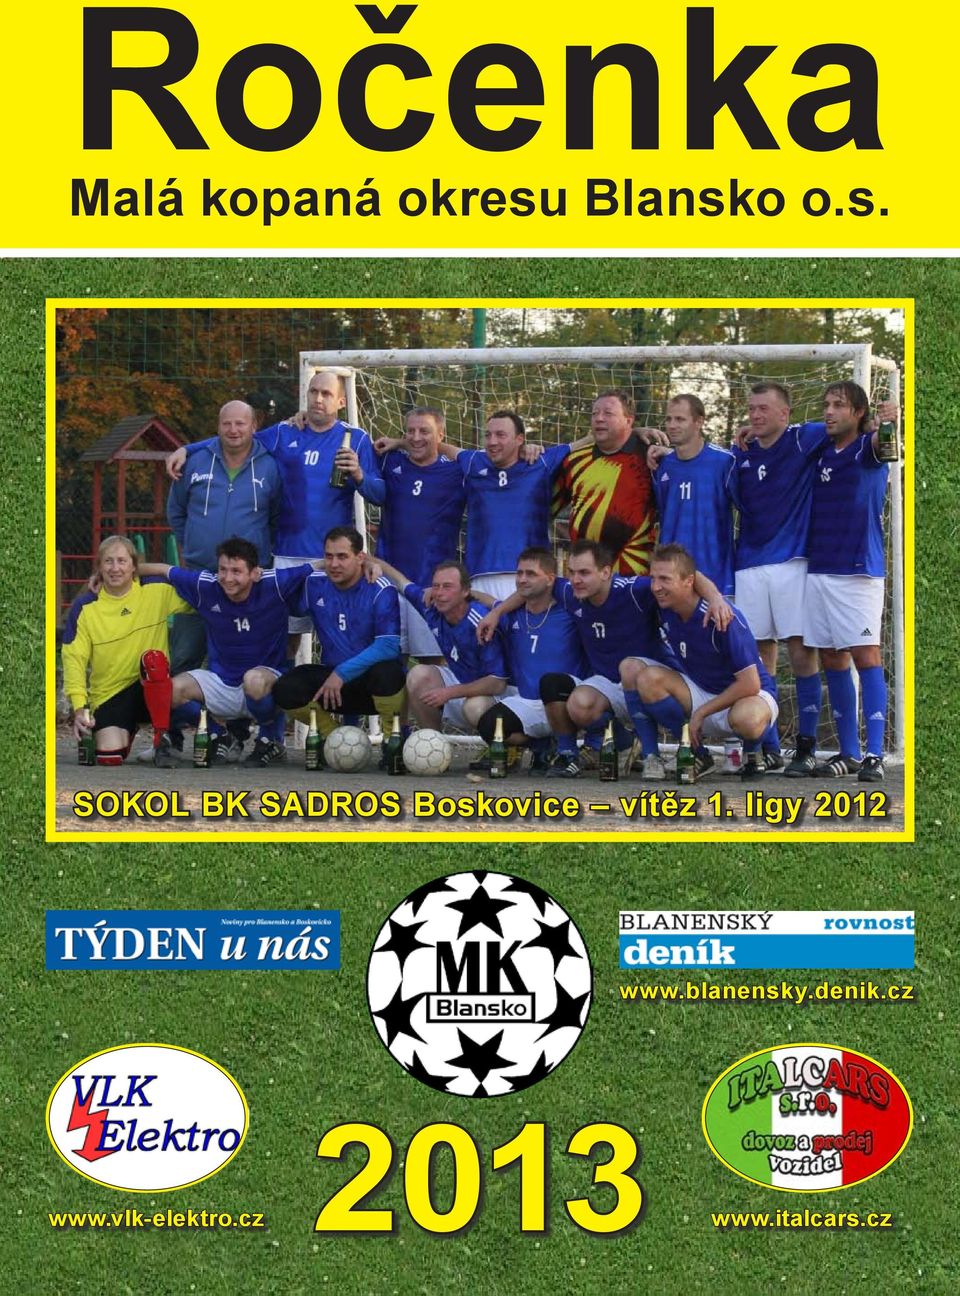 ligy 2012 www.blanensky.denik.cz www.